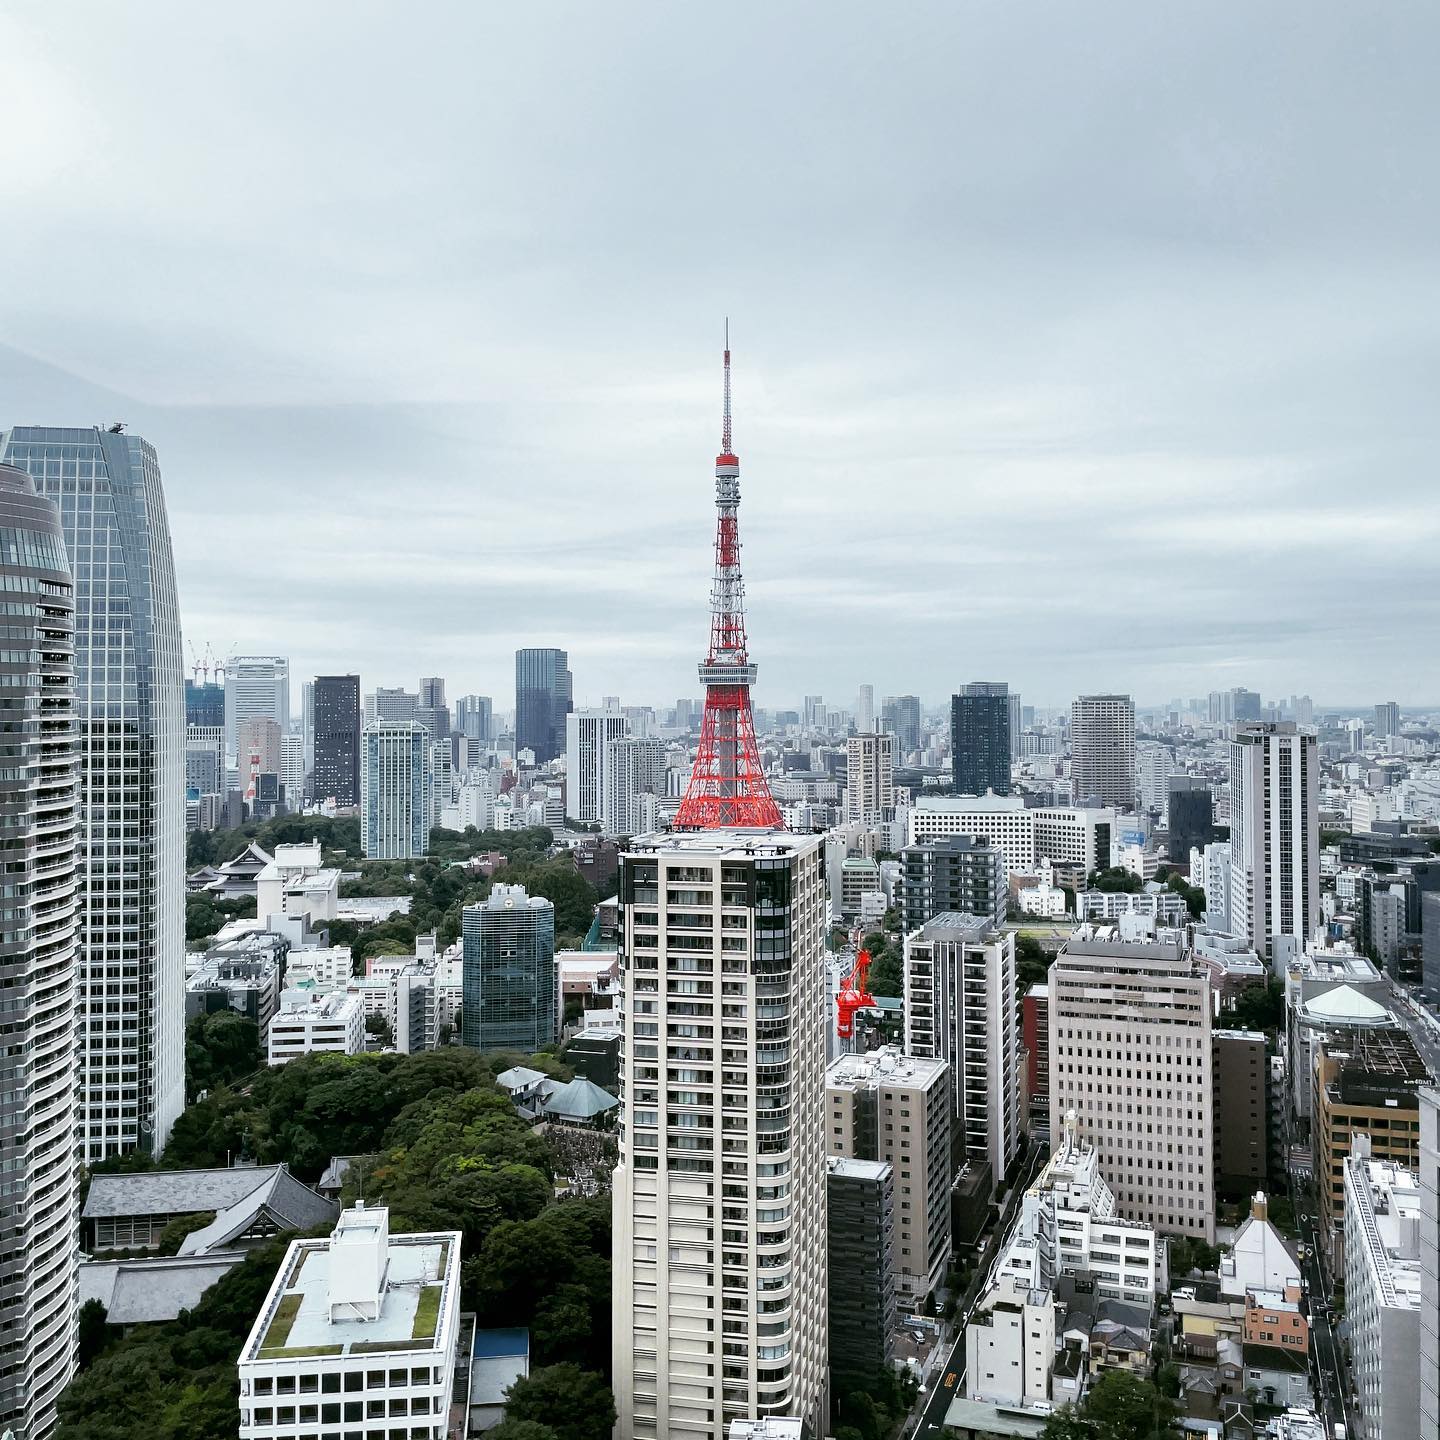 ここに住んだら東京タワーって思ってたより低いよね〜とか思うのだろうか…